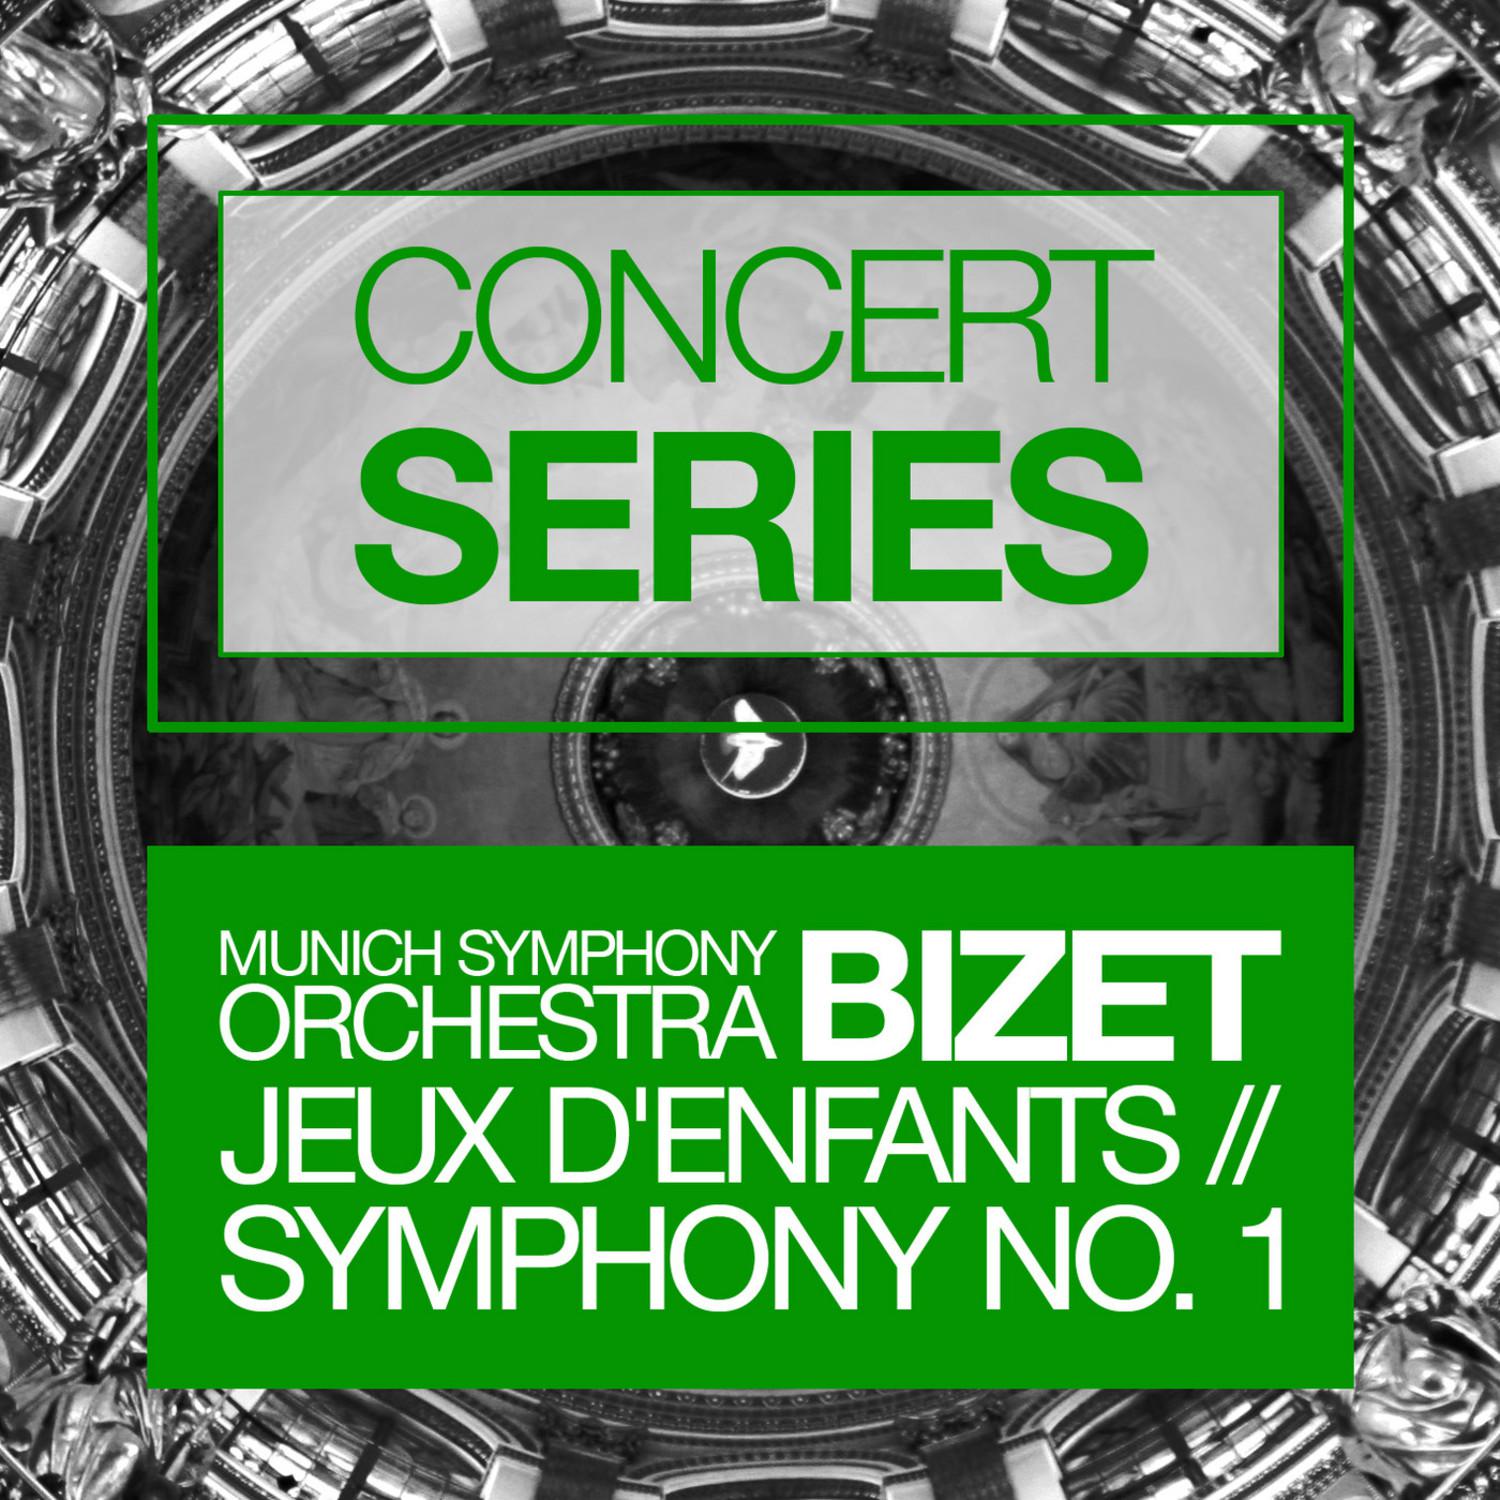 Concert Series: Bizet - Jeux D'enfants and Symphony No. 1